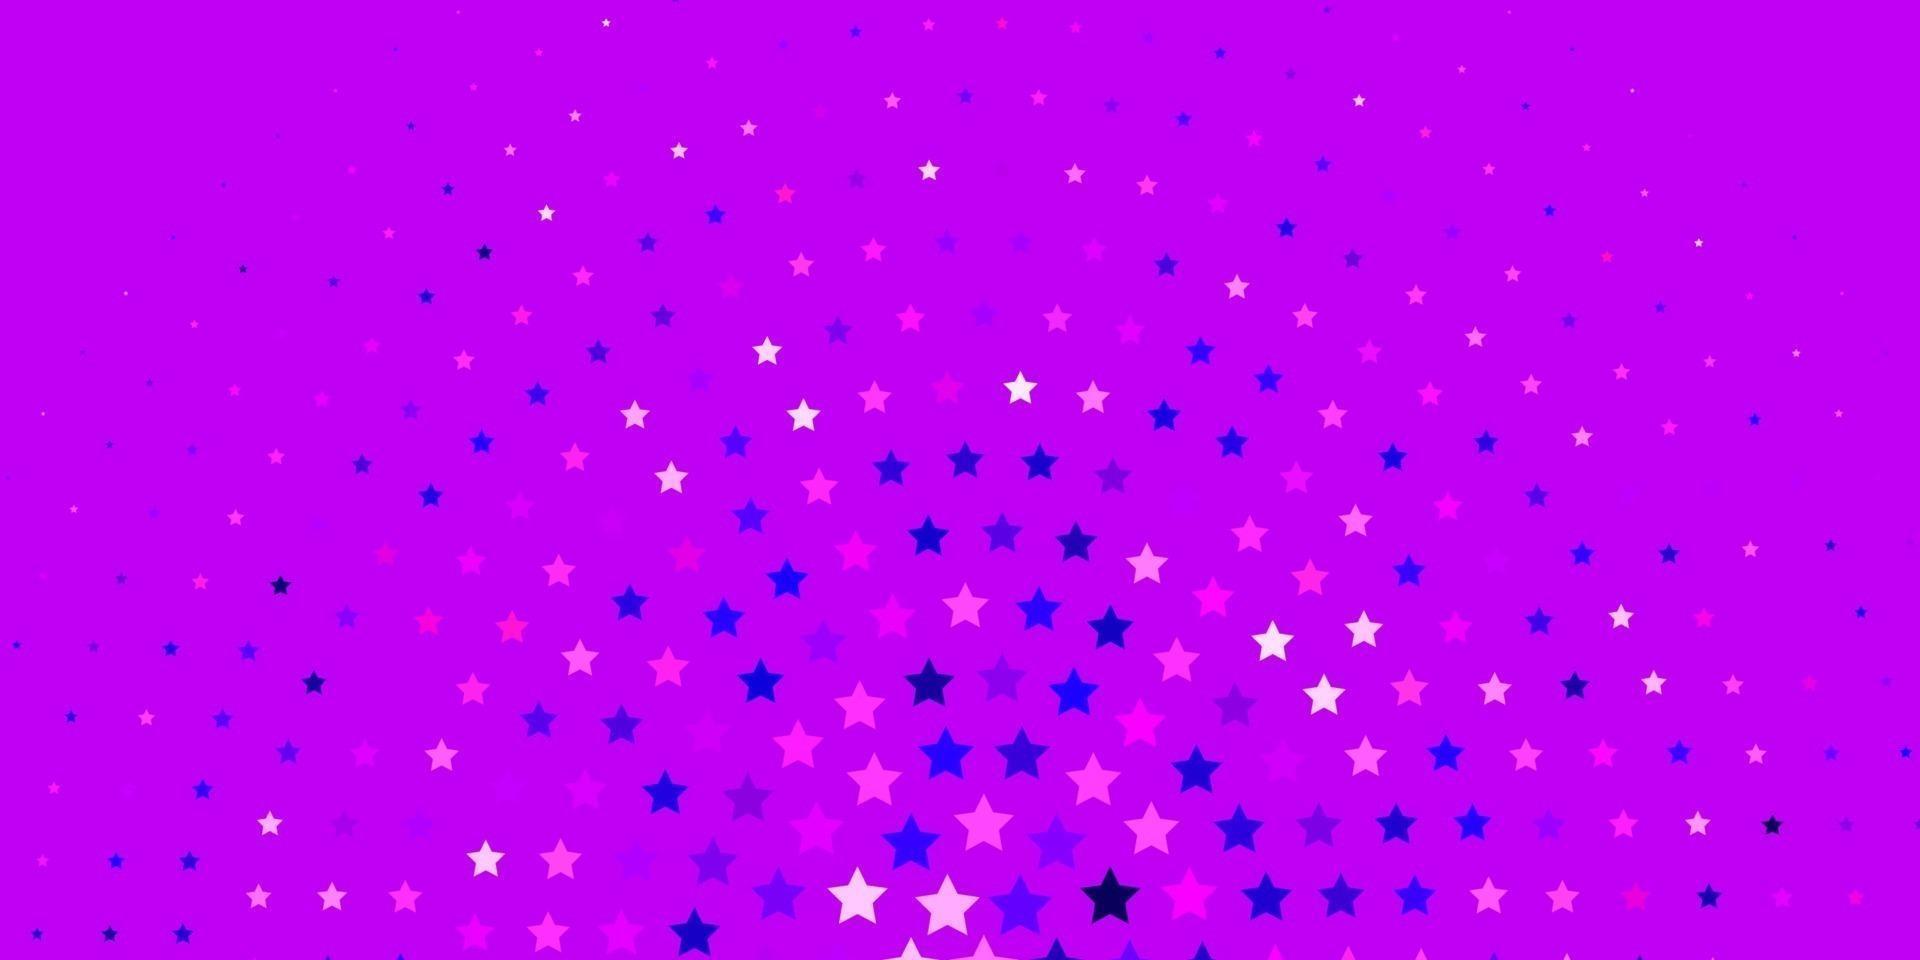 textura de vector violeta claro, rosa con hermosas estrellas.